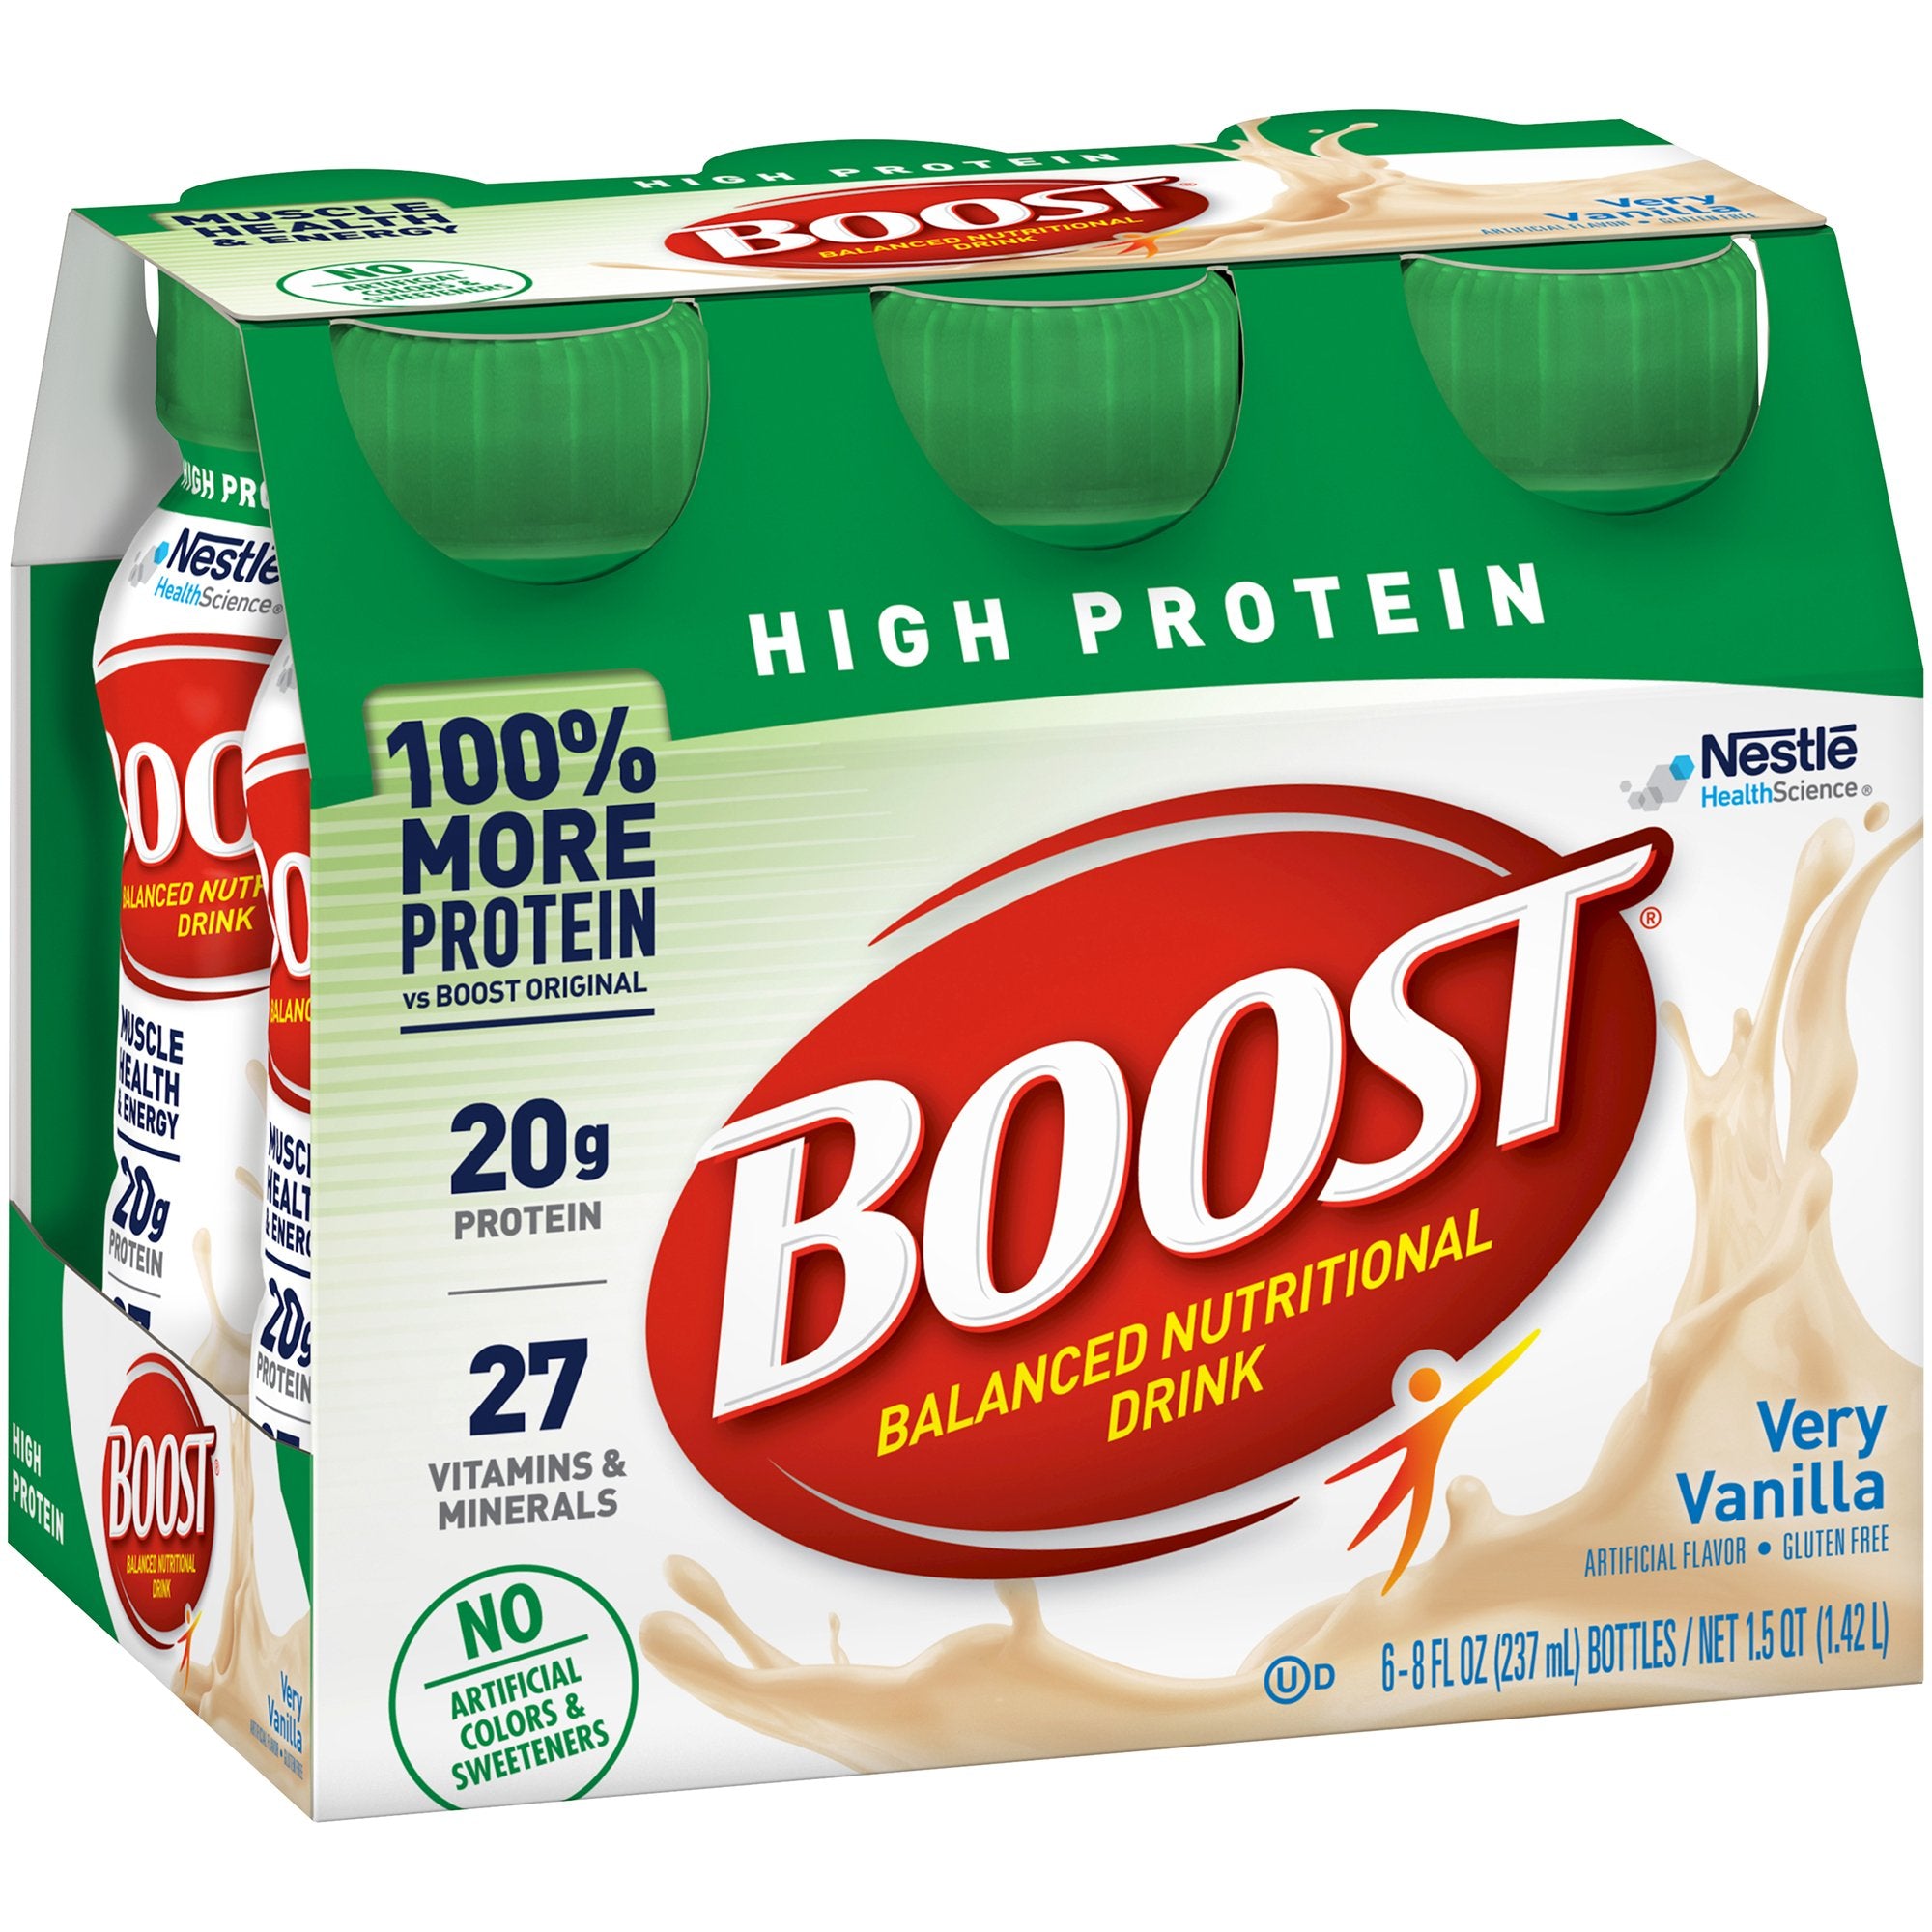 Oral Supplement Boost High Protein Very Vanilla Flavor Liquid 8 oz. Bottle